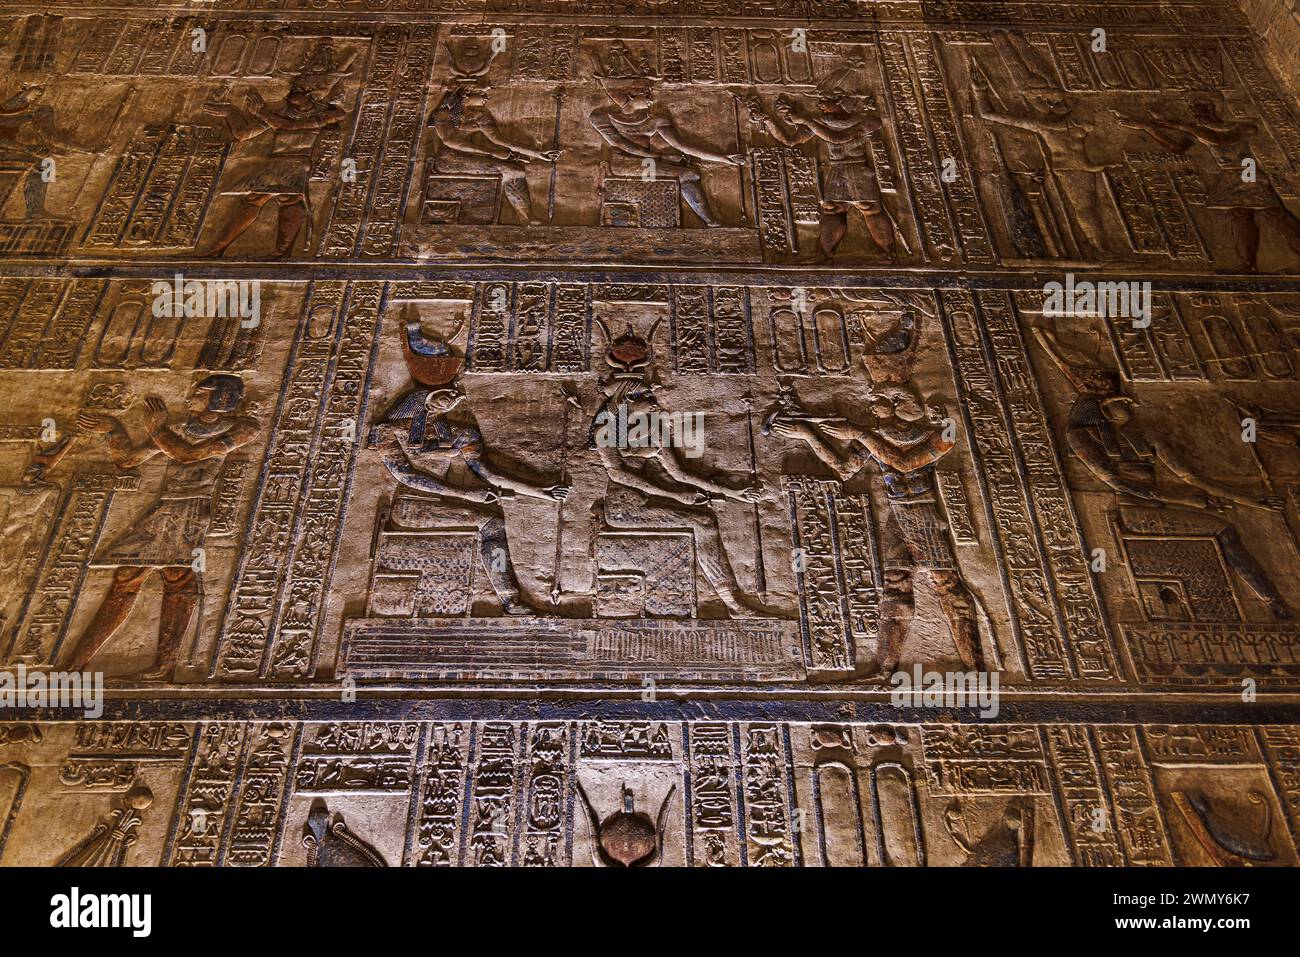 Egitto, Qena, Dendera, templi faraonici nell'alto Egitto dal periodo tolemaico e romano, patrimonio mondiale dell'UNESCO, Tempio di Hathor, bassorilievo Foto Stock